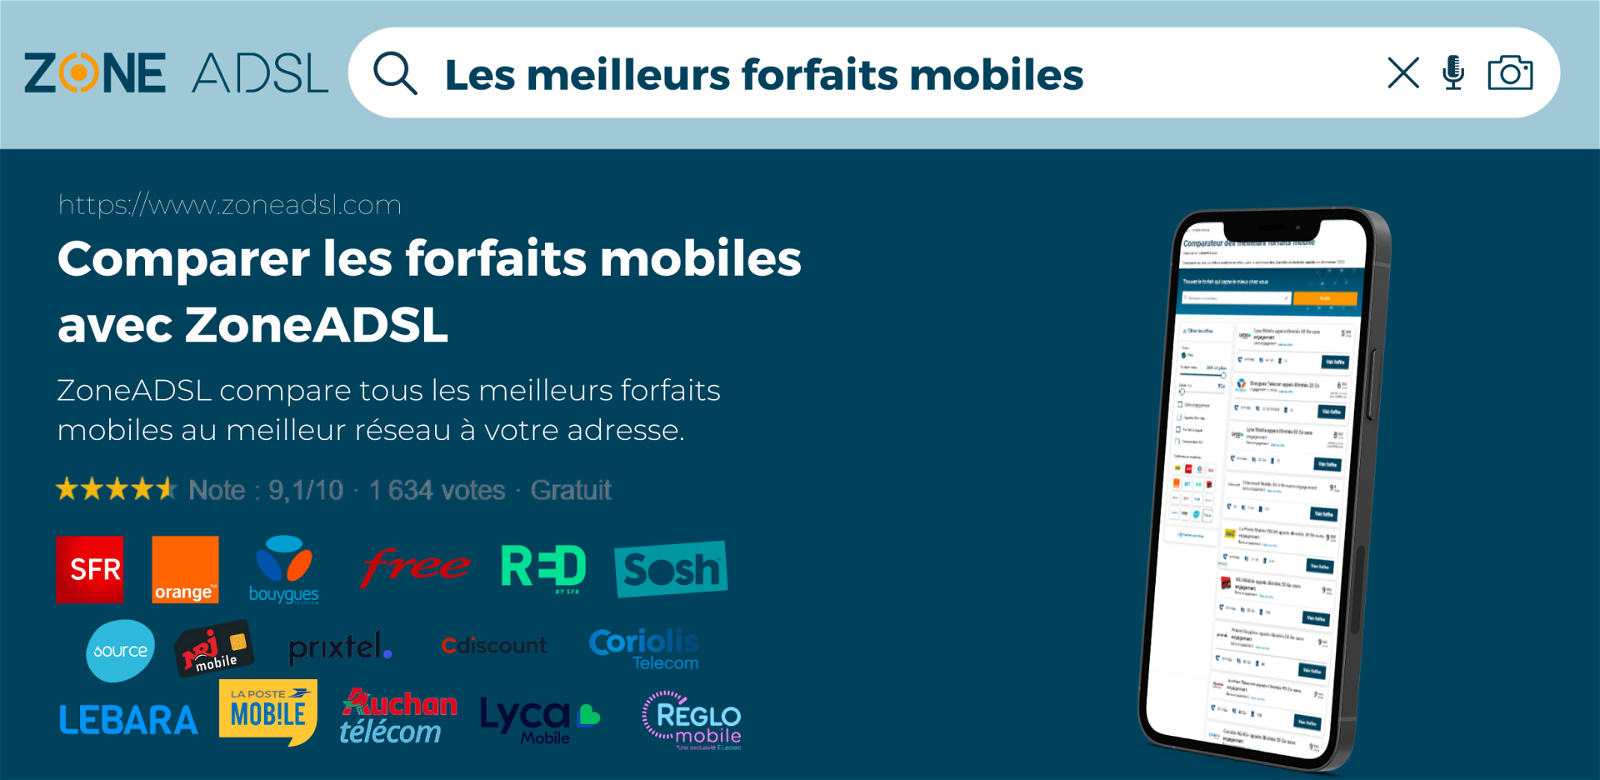 Offrez-vous un forfait mobile à moins de 5€ chez Syma Mobile ou Prixtel !